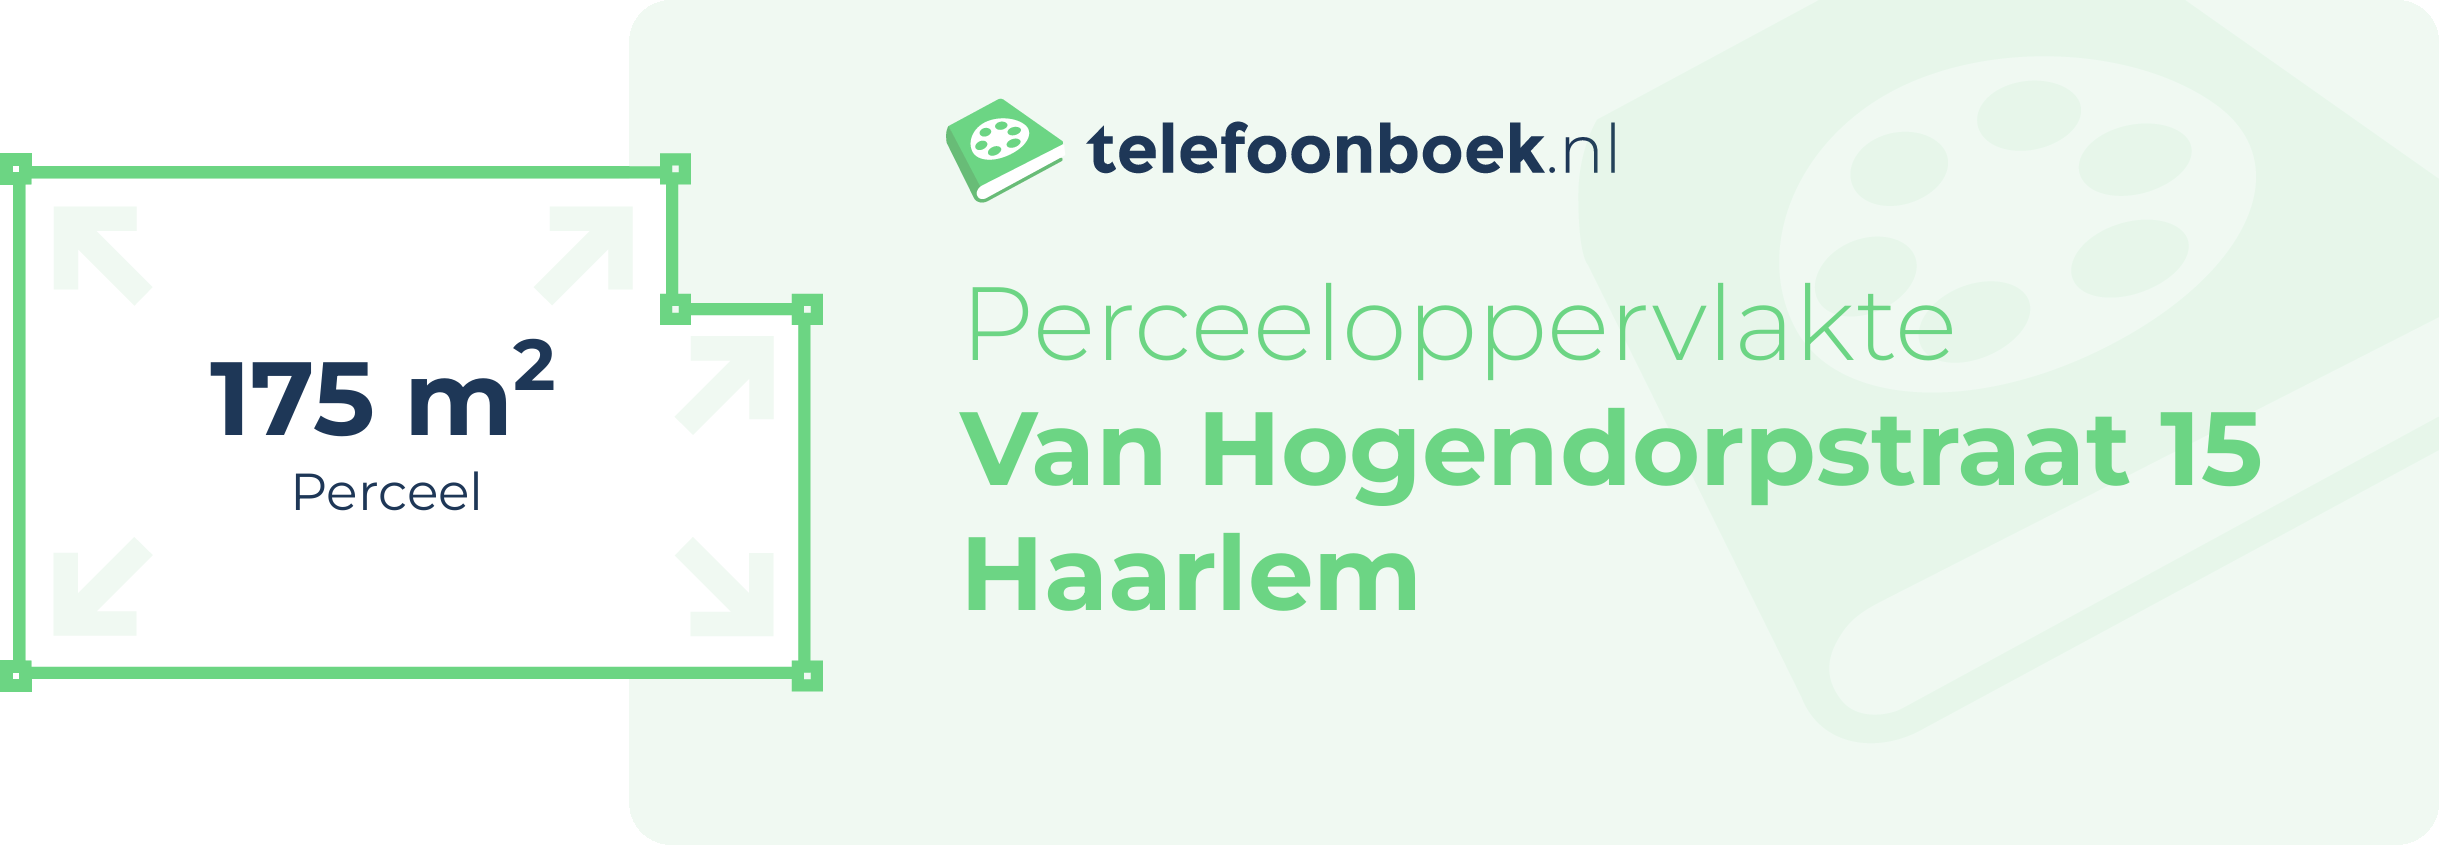 Perceeloppervlakte Van Hogendorpstraat 15 Haarlem